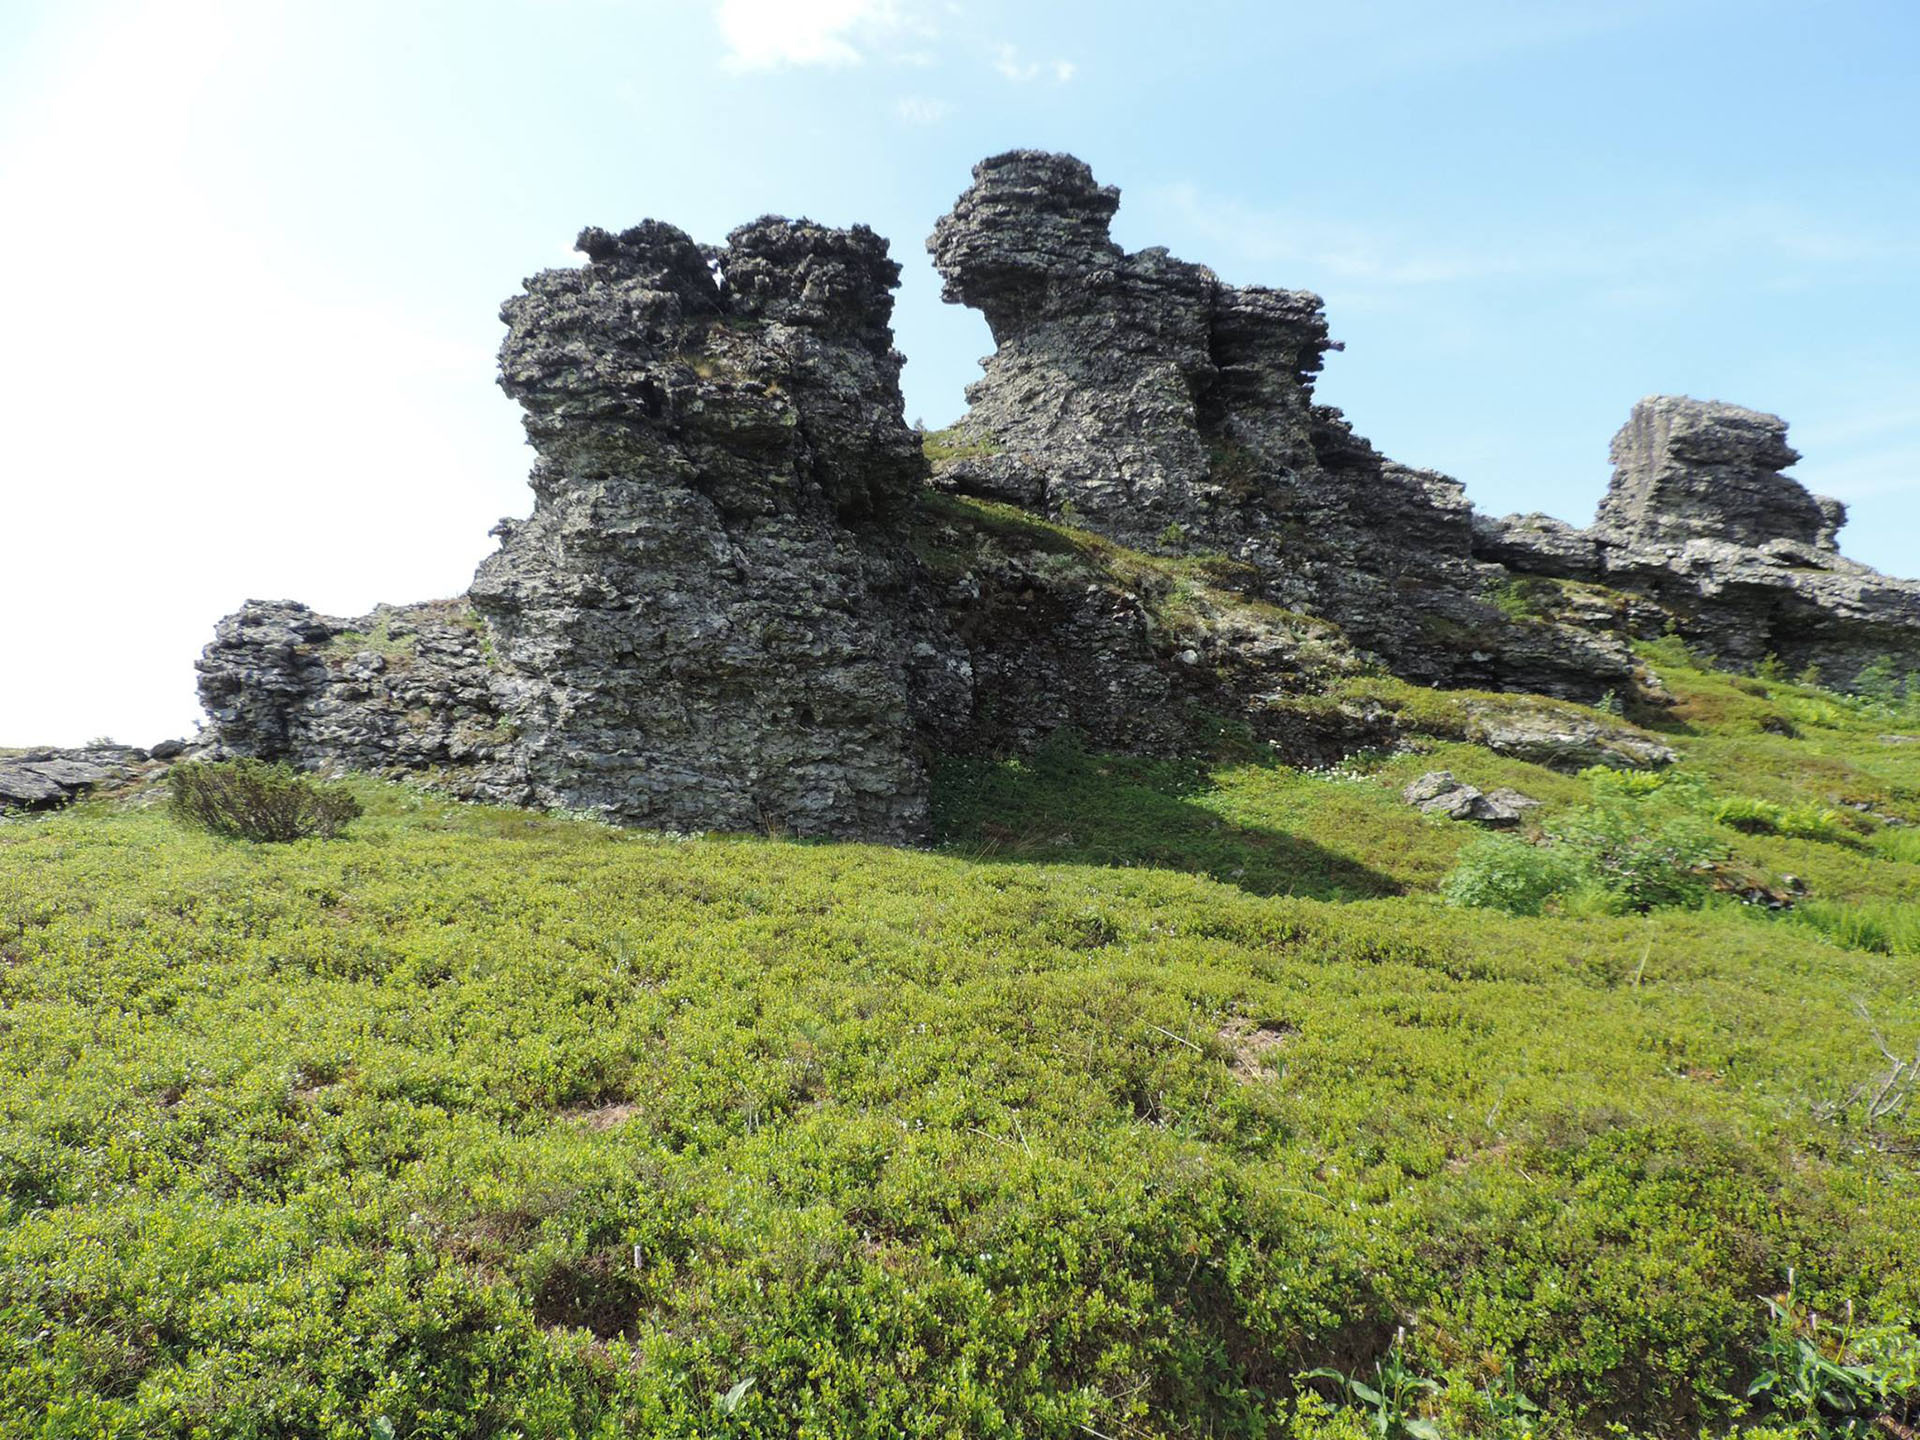 Исследователям удалось посетить хребет Монинг-тумп, где в одном из гротов они обнаружили следы пребывания древнего человека